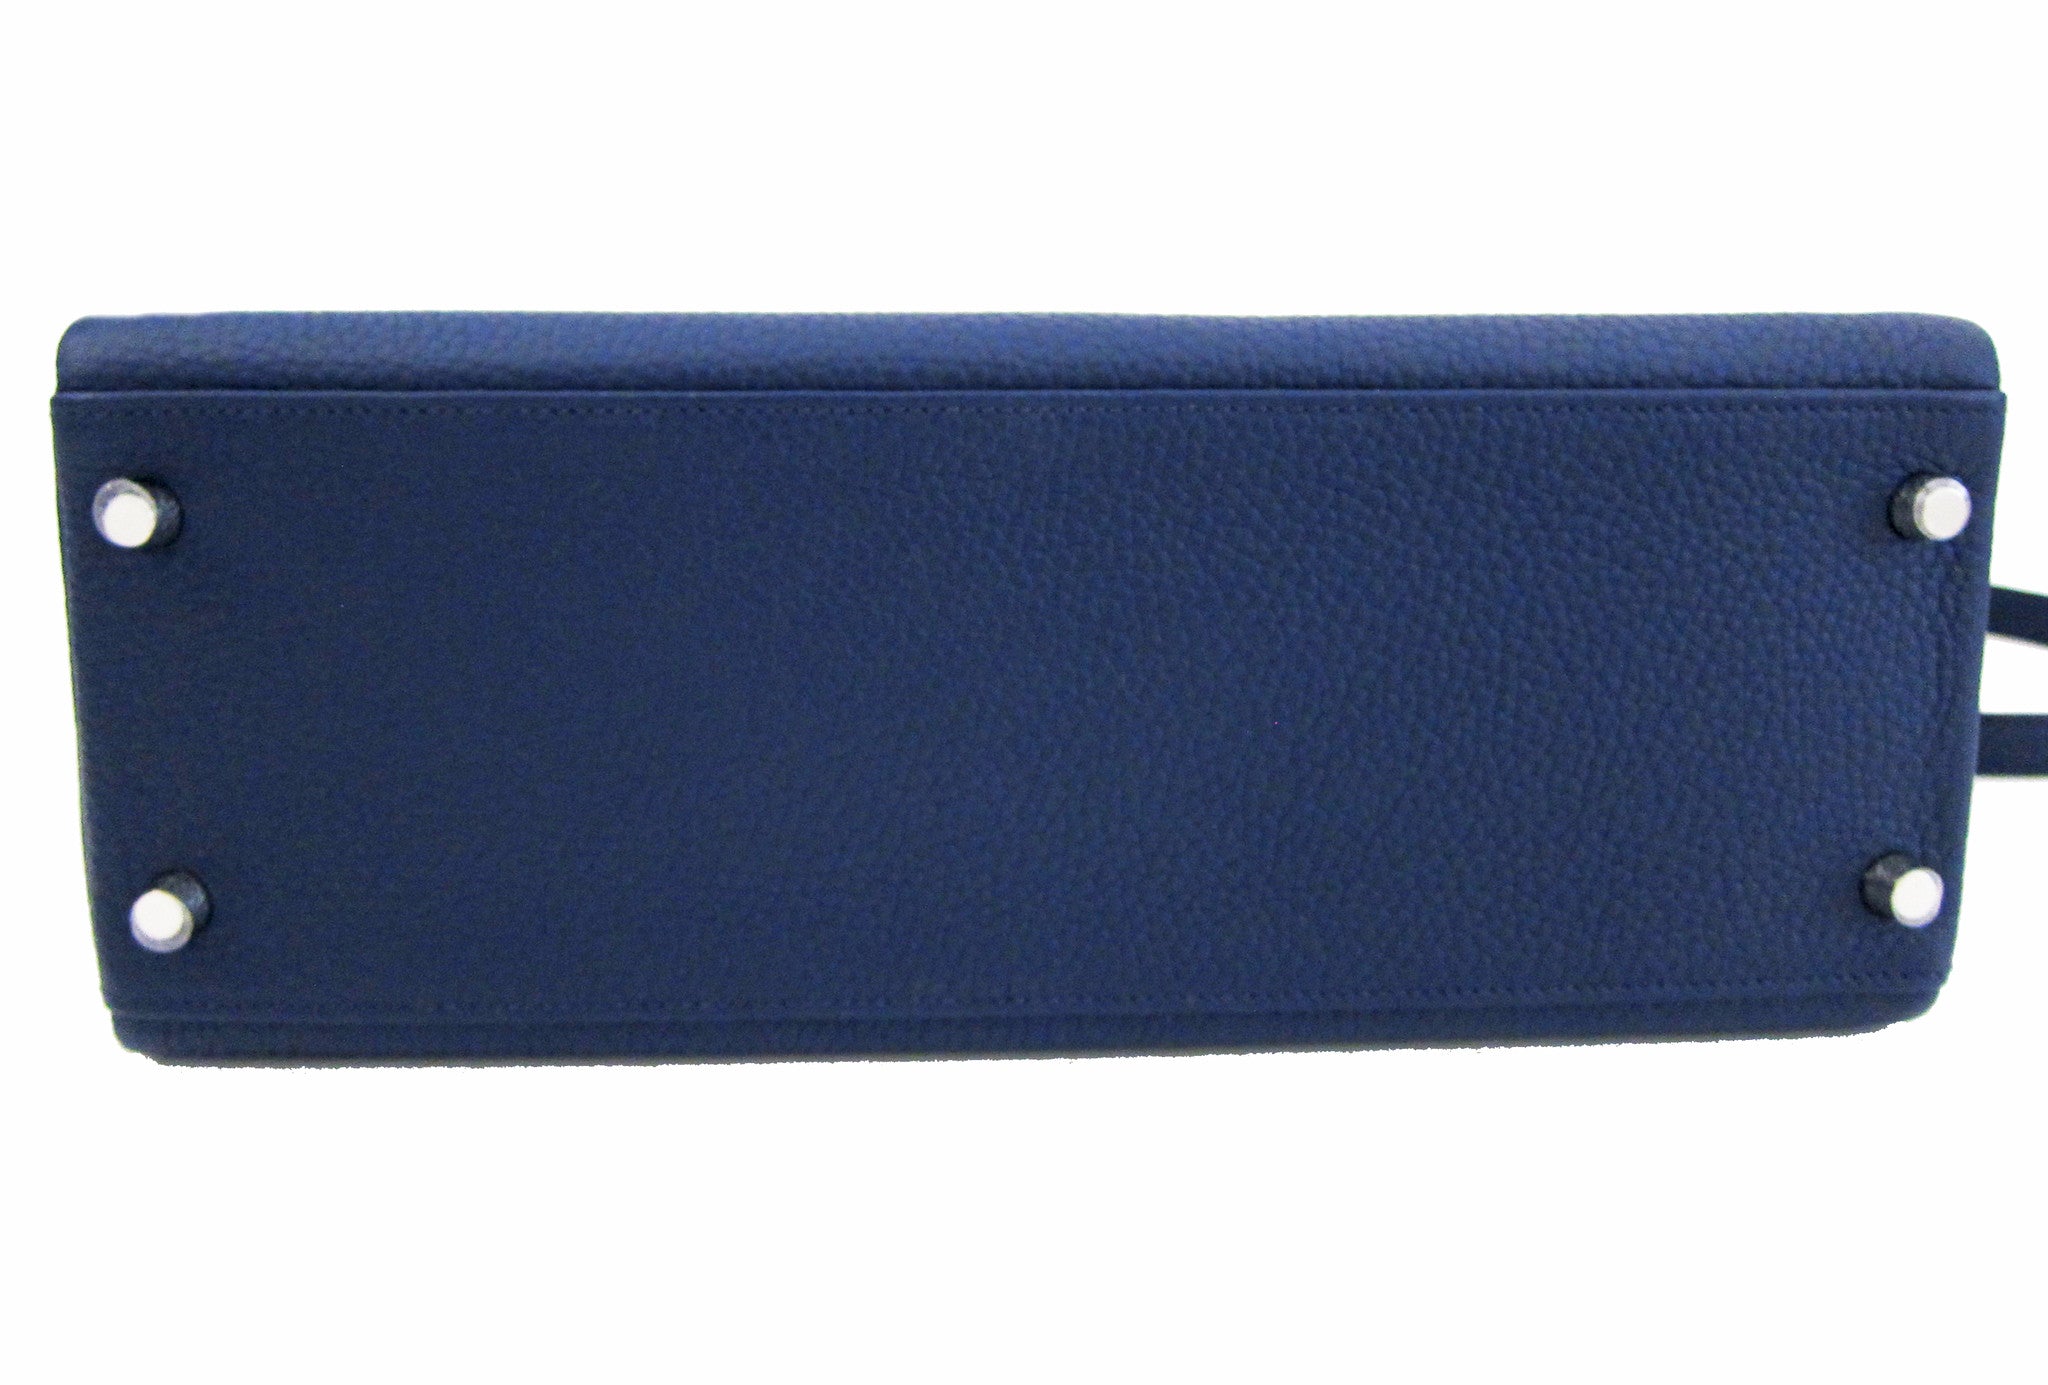 Hermes Blue Sapphire Kelly 25cm Epsom Gold Hardware - Chicjoy